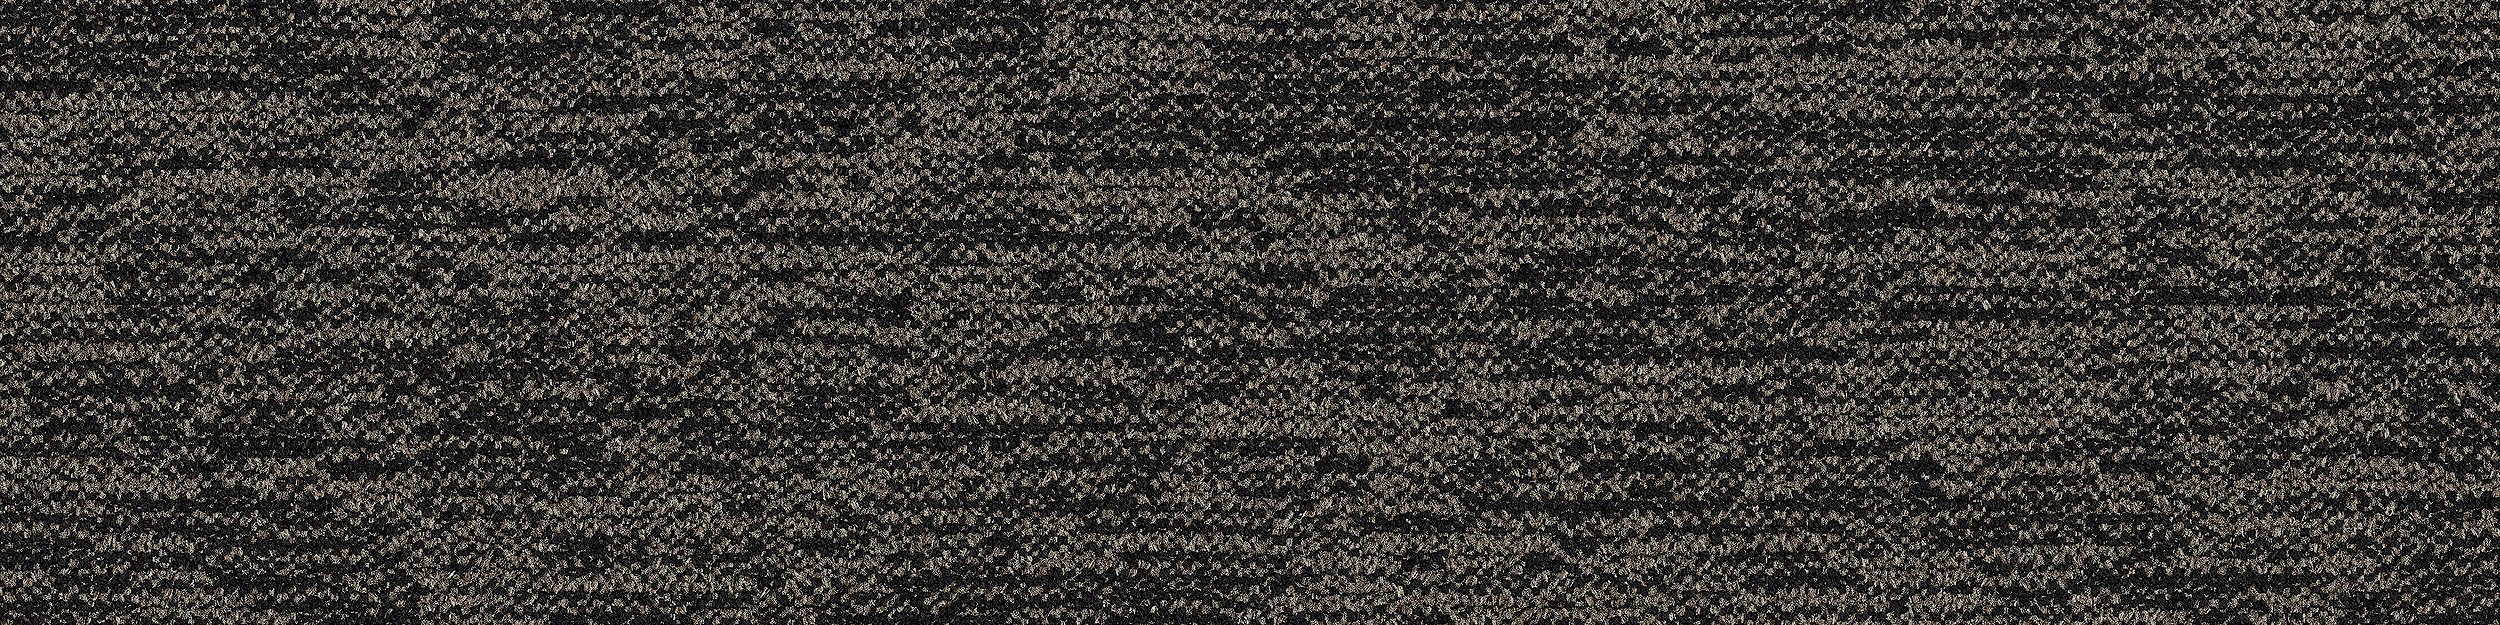 DL908 Carpet Tile In Basalt image number 13